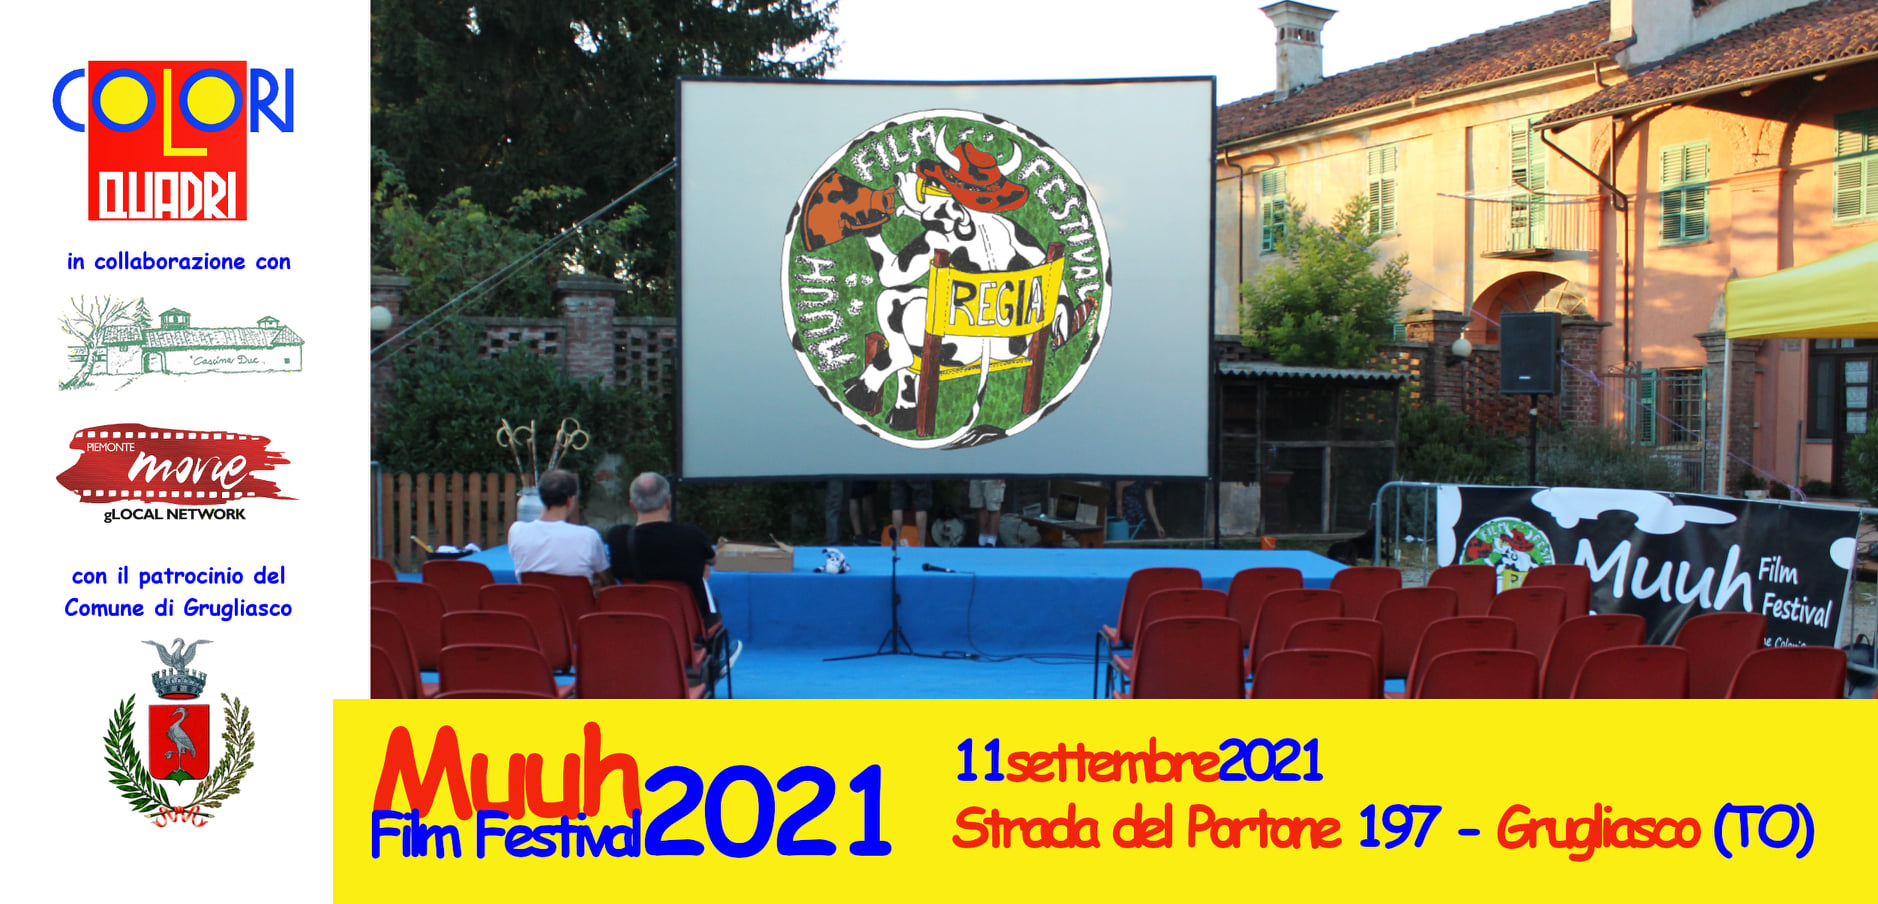 Torna il Muuh Film Festival a Grugliasco